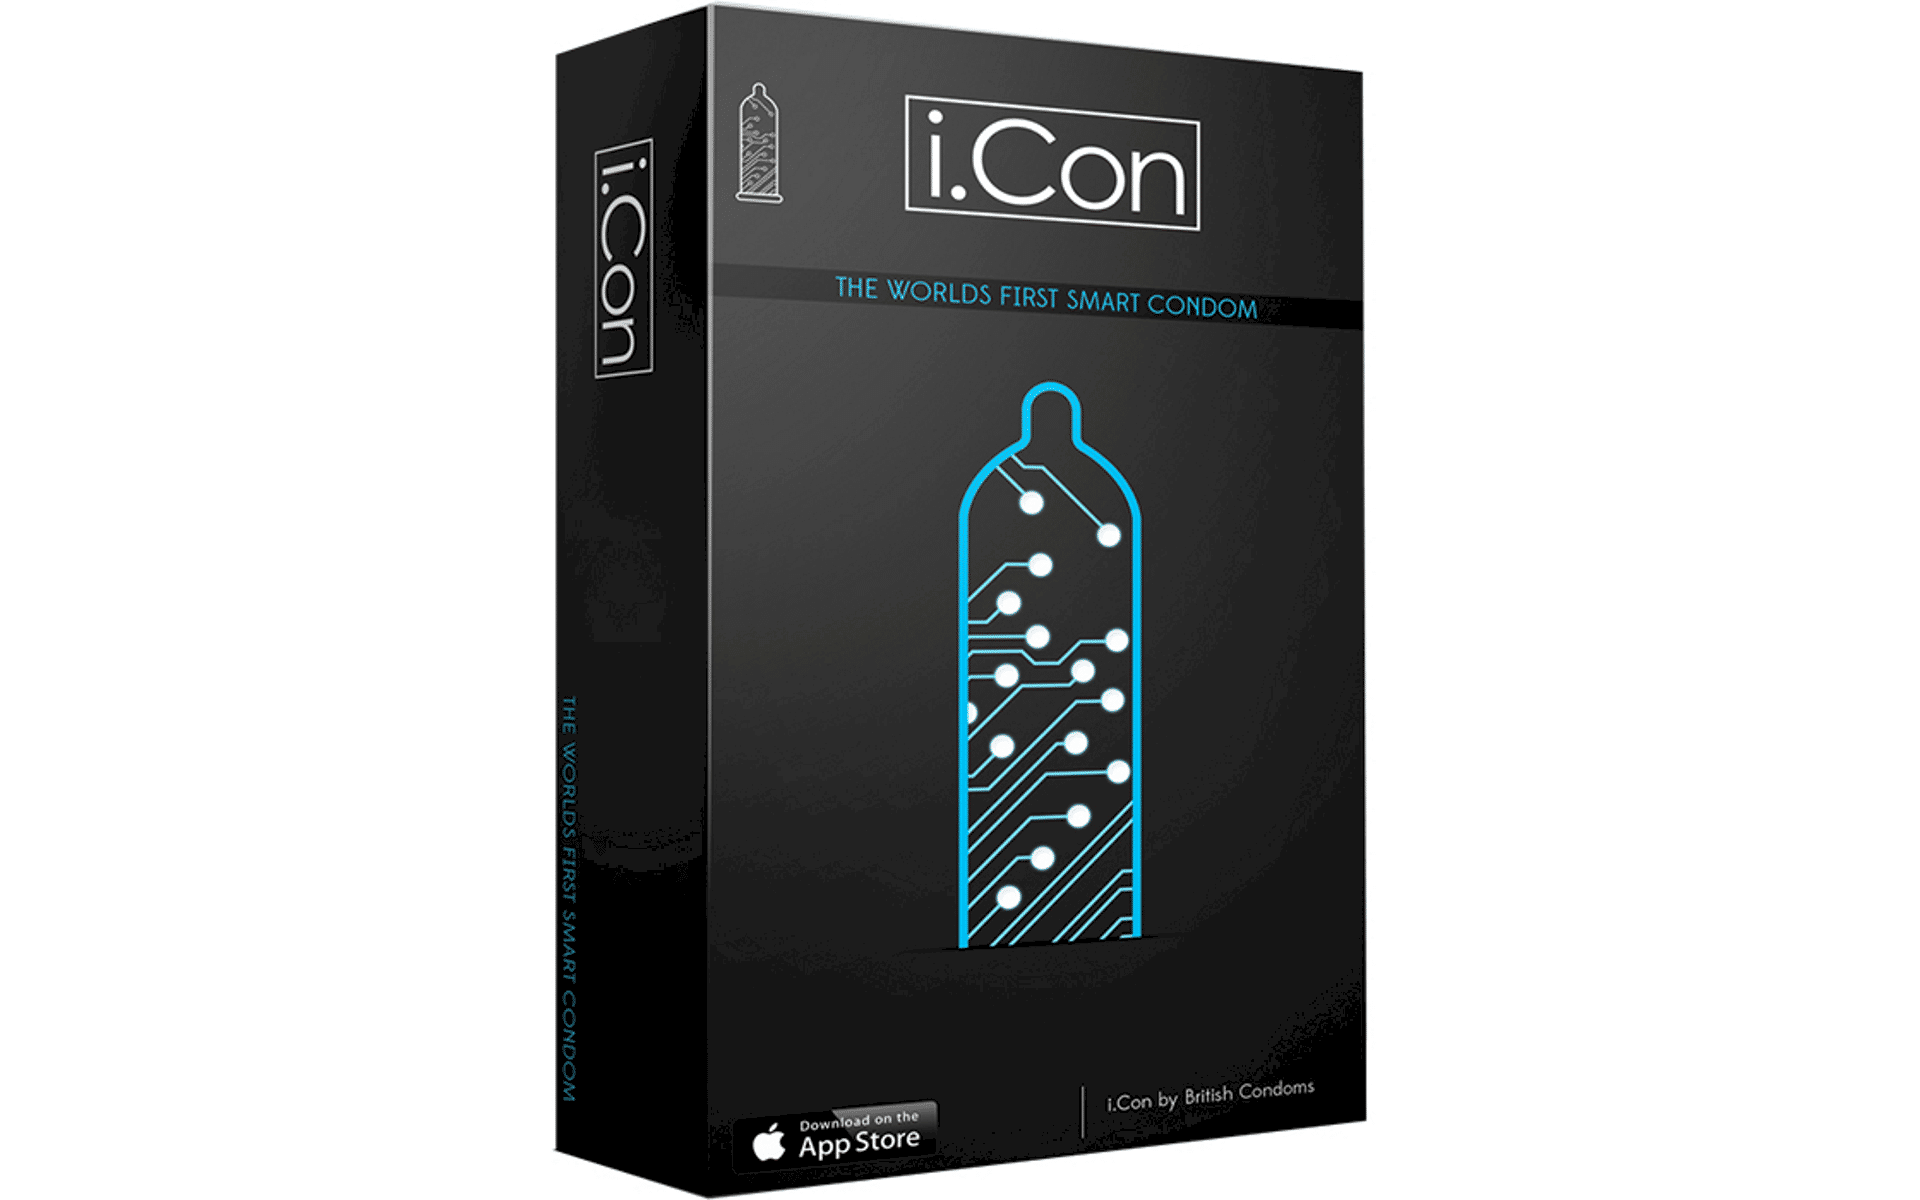 The i.Con 'smart condom' – black vaginal lubricant.